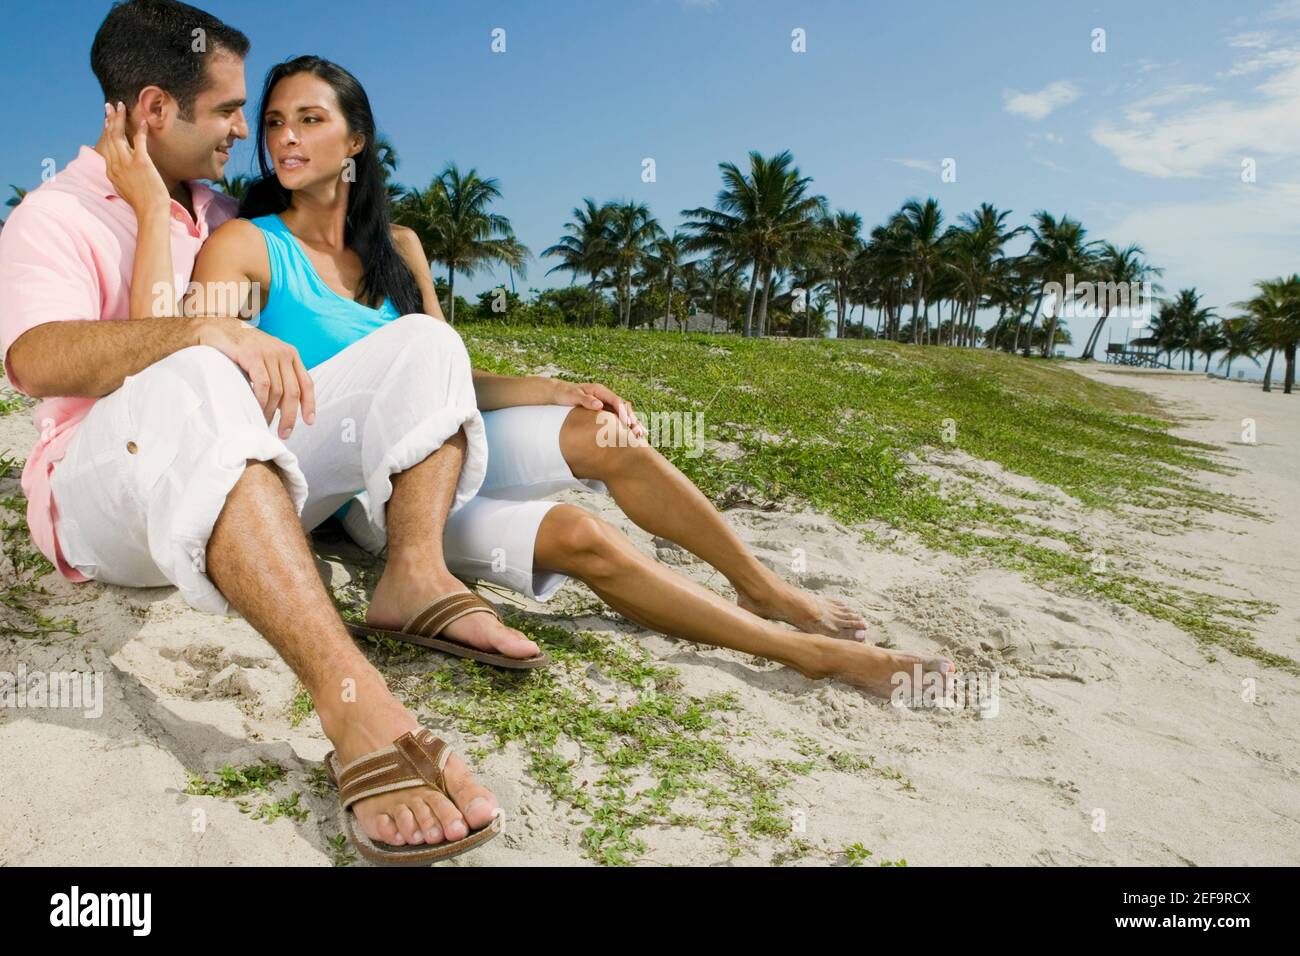 Close-up de una pareja joven sonriente en la playa Foto de stock